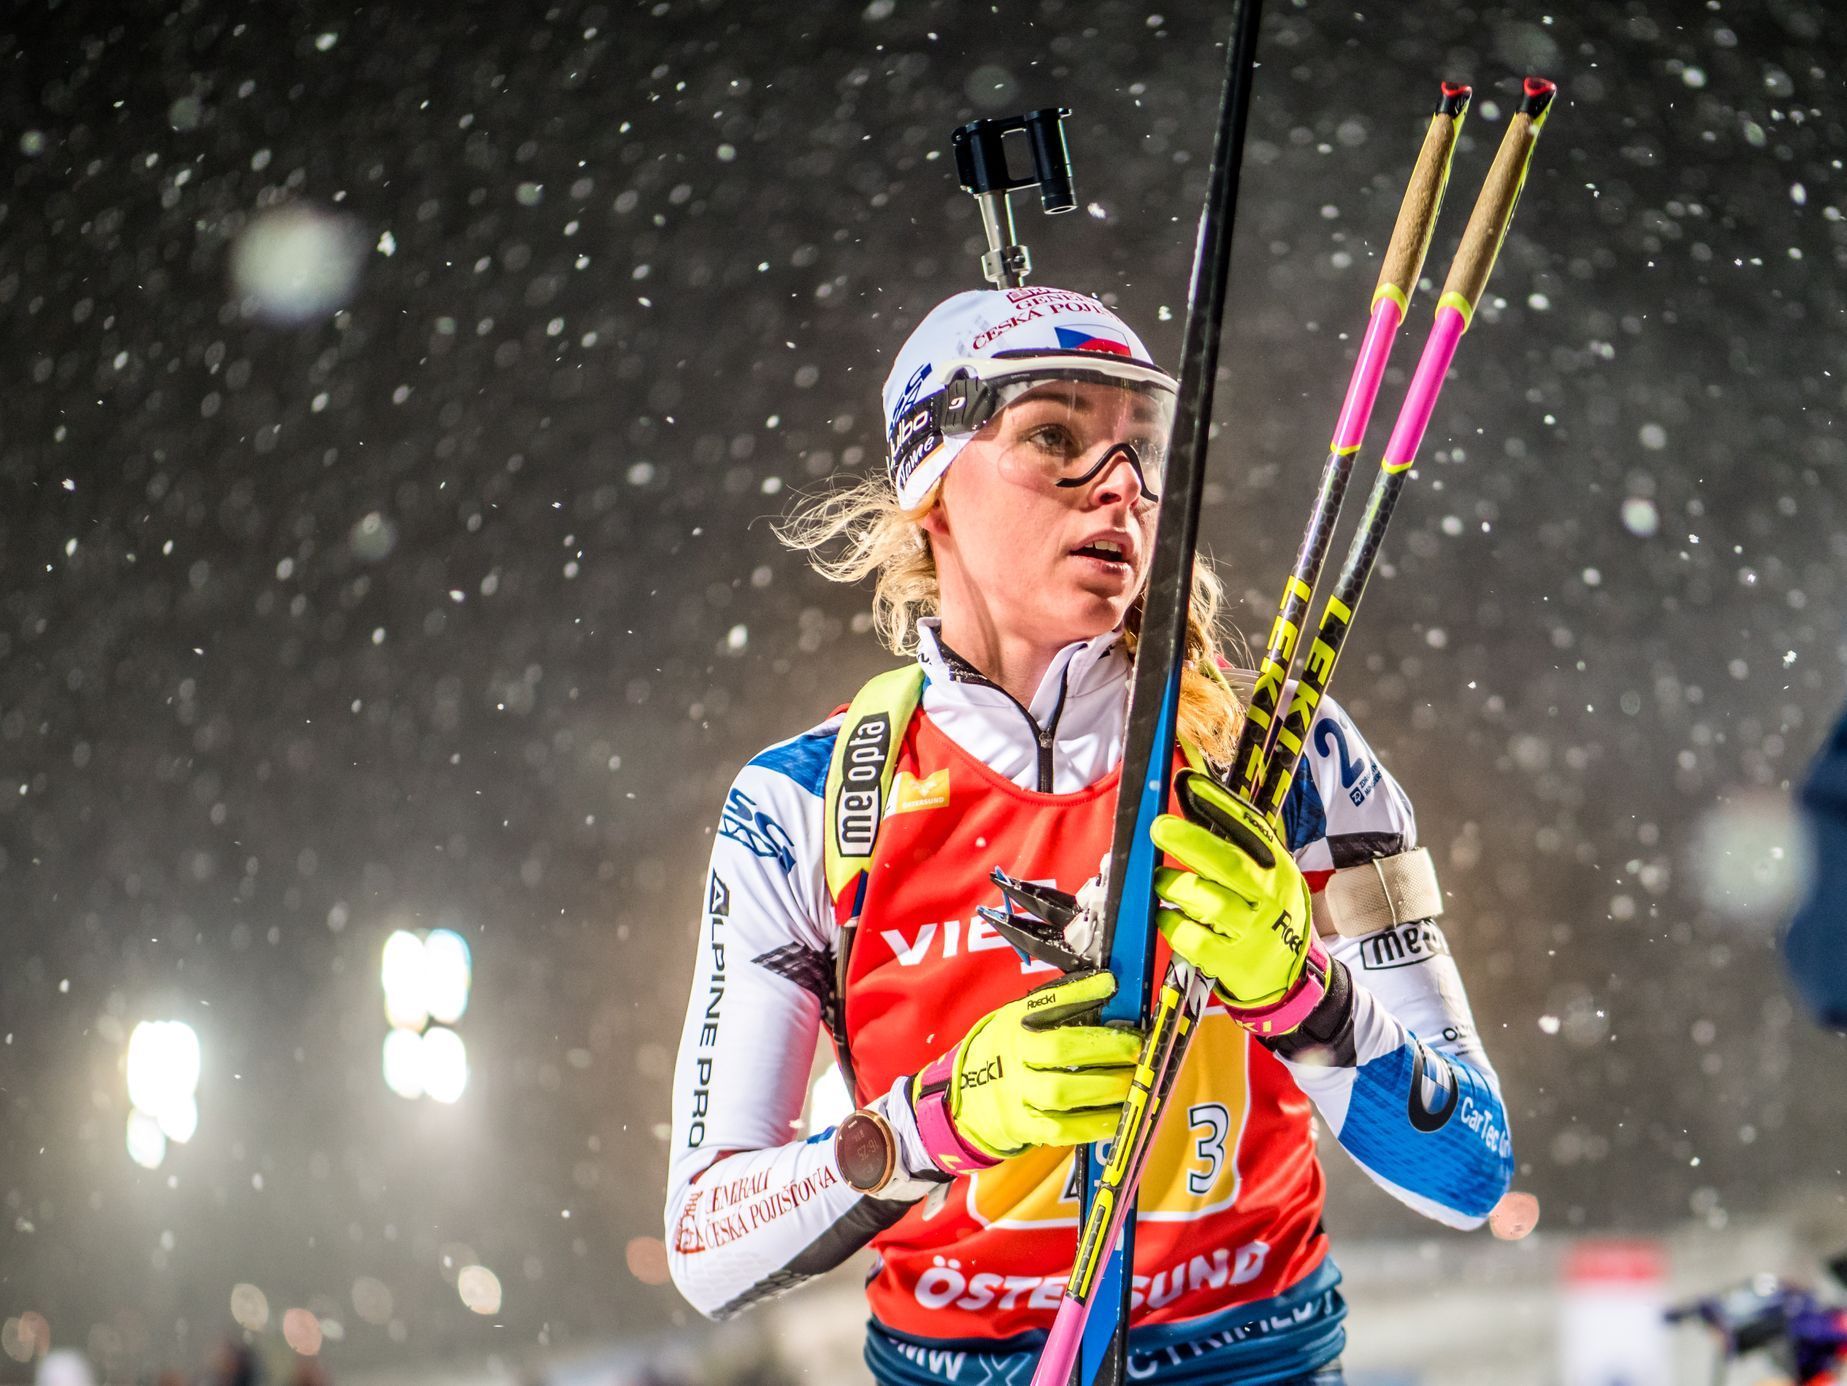 Světový pohár v biatlonu, Östersund 2019 (Markéta Davidová)